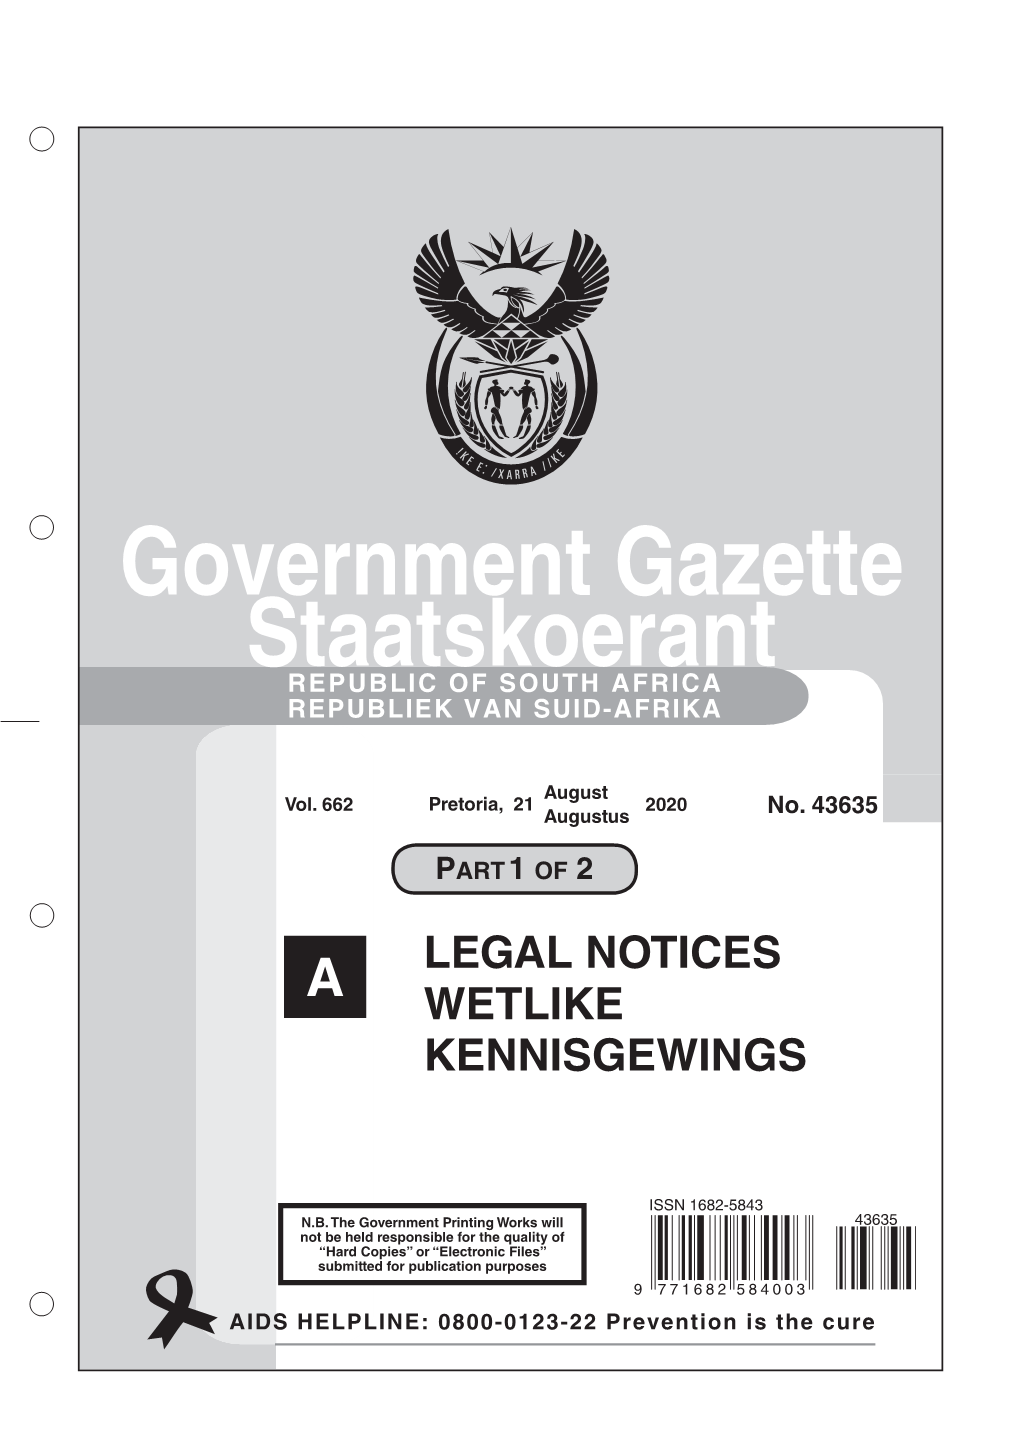 Government Gazette Staatskoerant REPUBLIC of SOUTH AFRICA REPUBLIEK VAN SUID-AFRIKA LEGAL NOTICES WETLIKE KENNISGEWINGS A